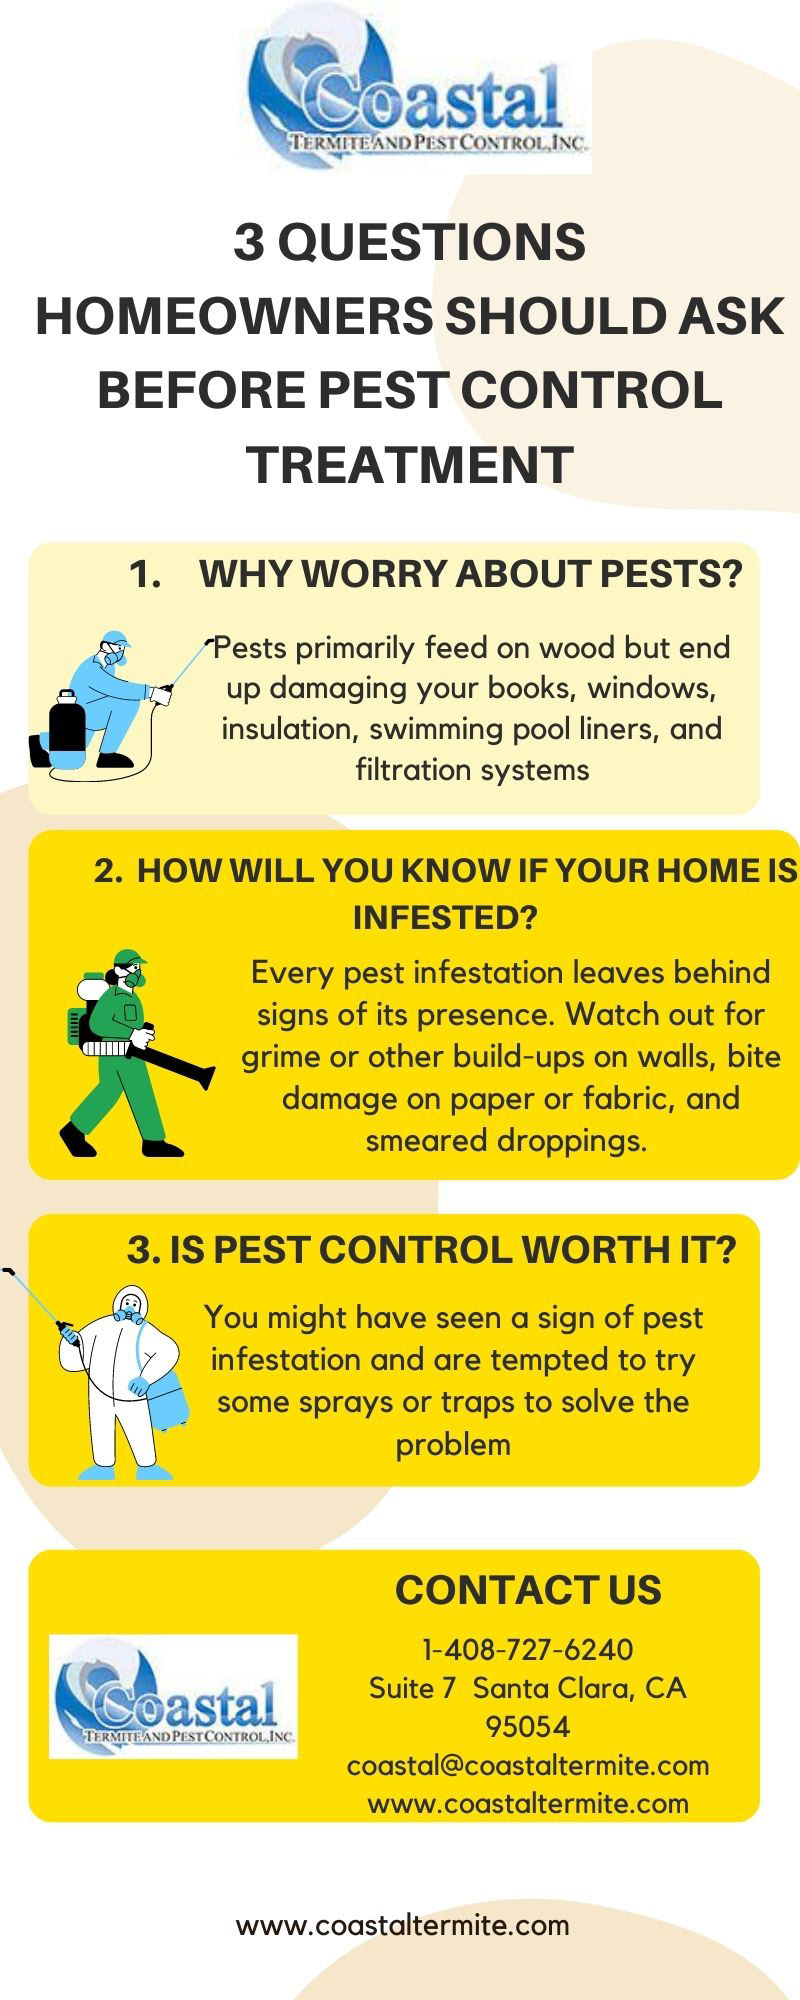 Pest Control pest control company pest control services